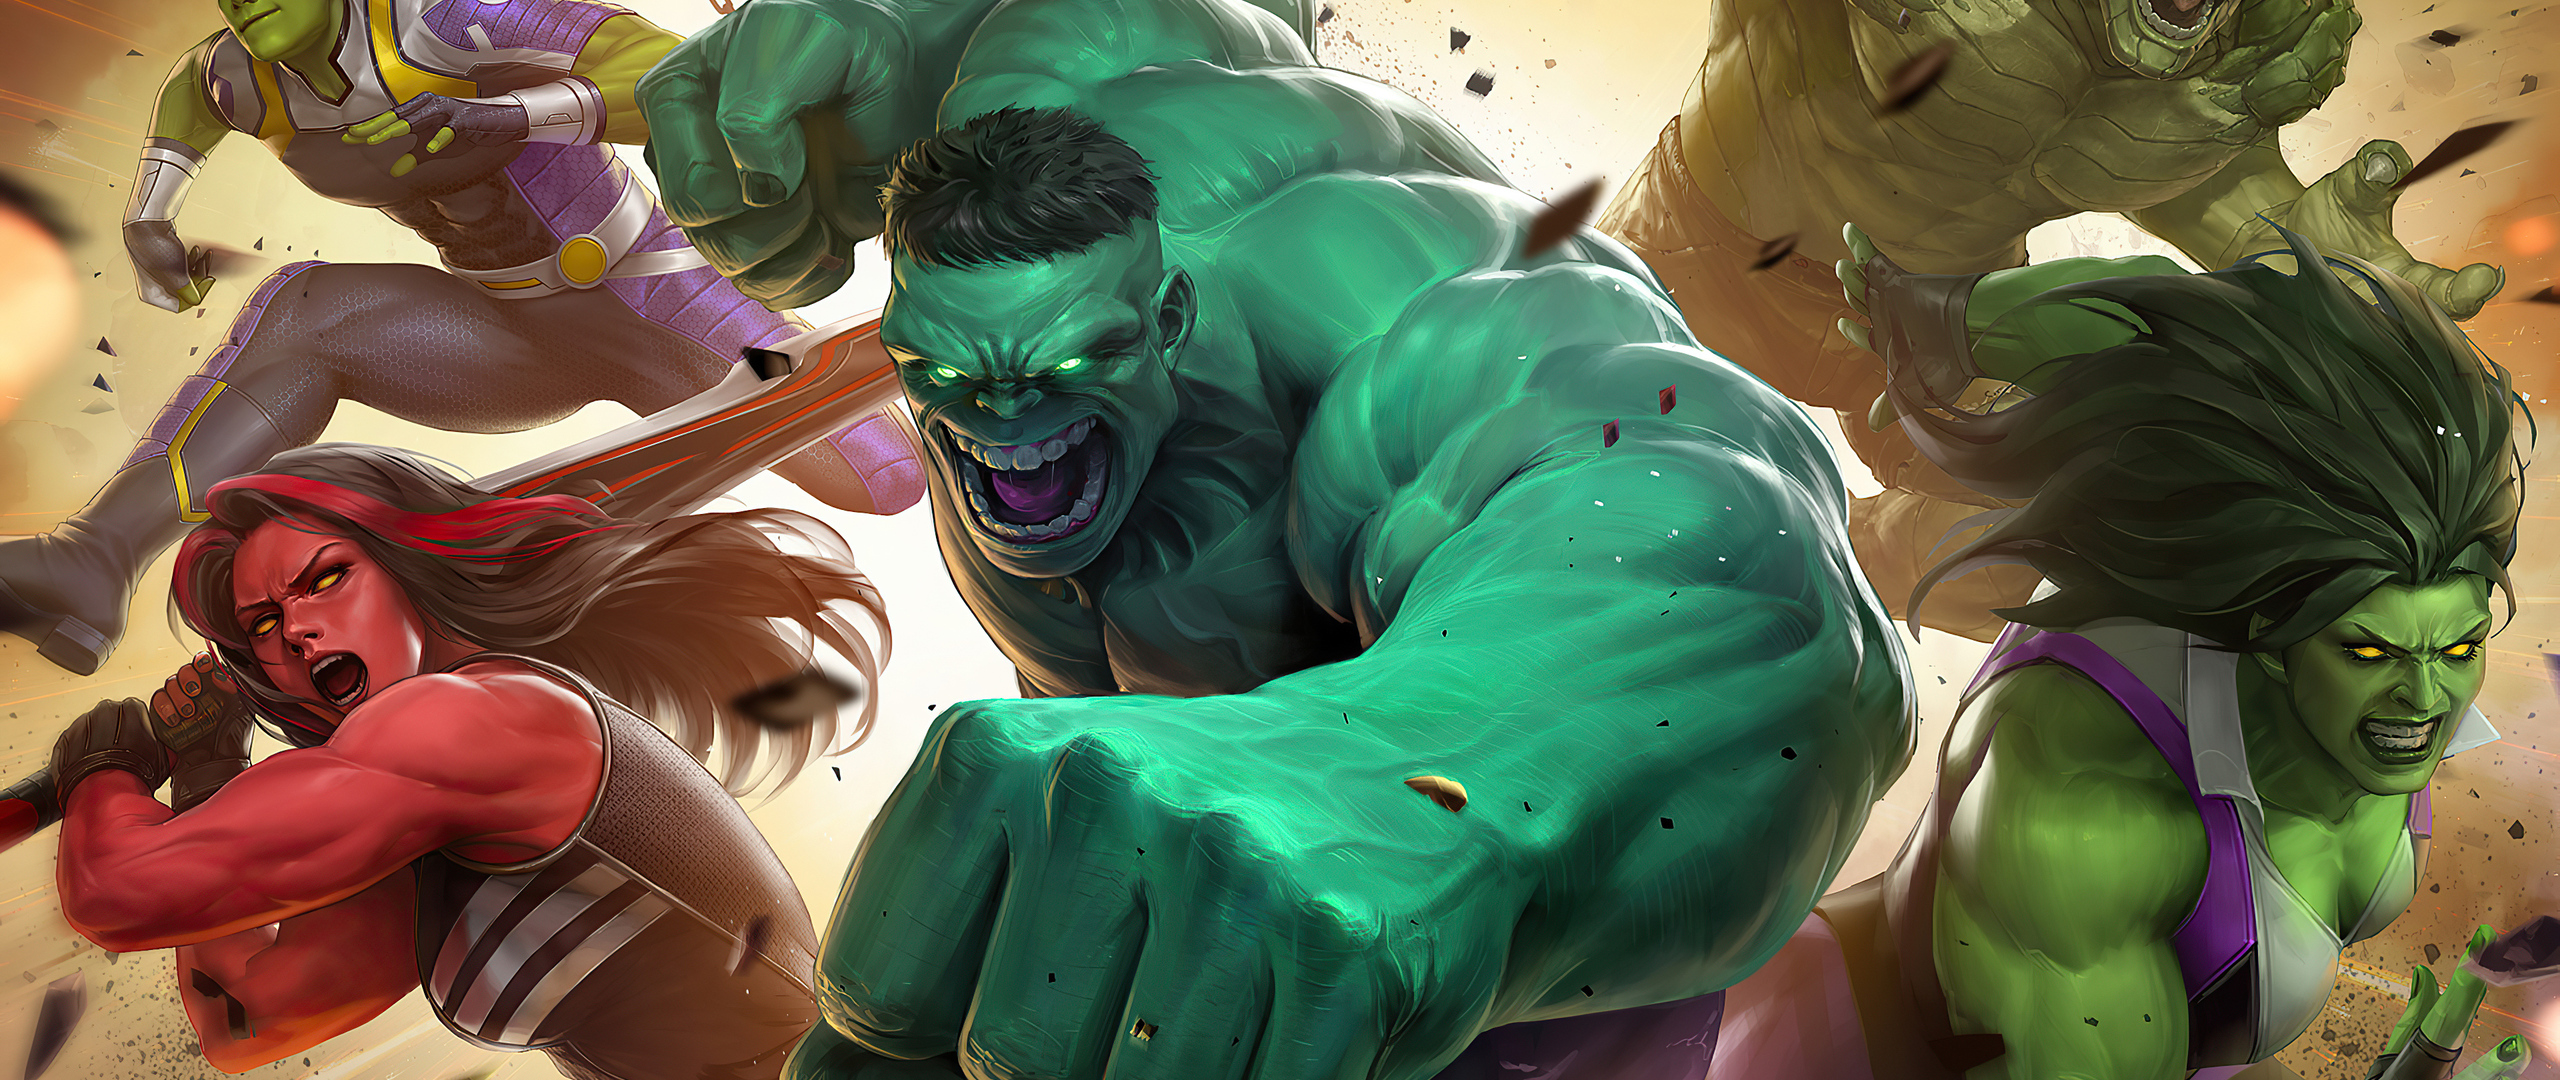 hulk-and-his-friends-marvel-super-war-xd-2560x1080.jpg